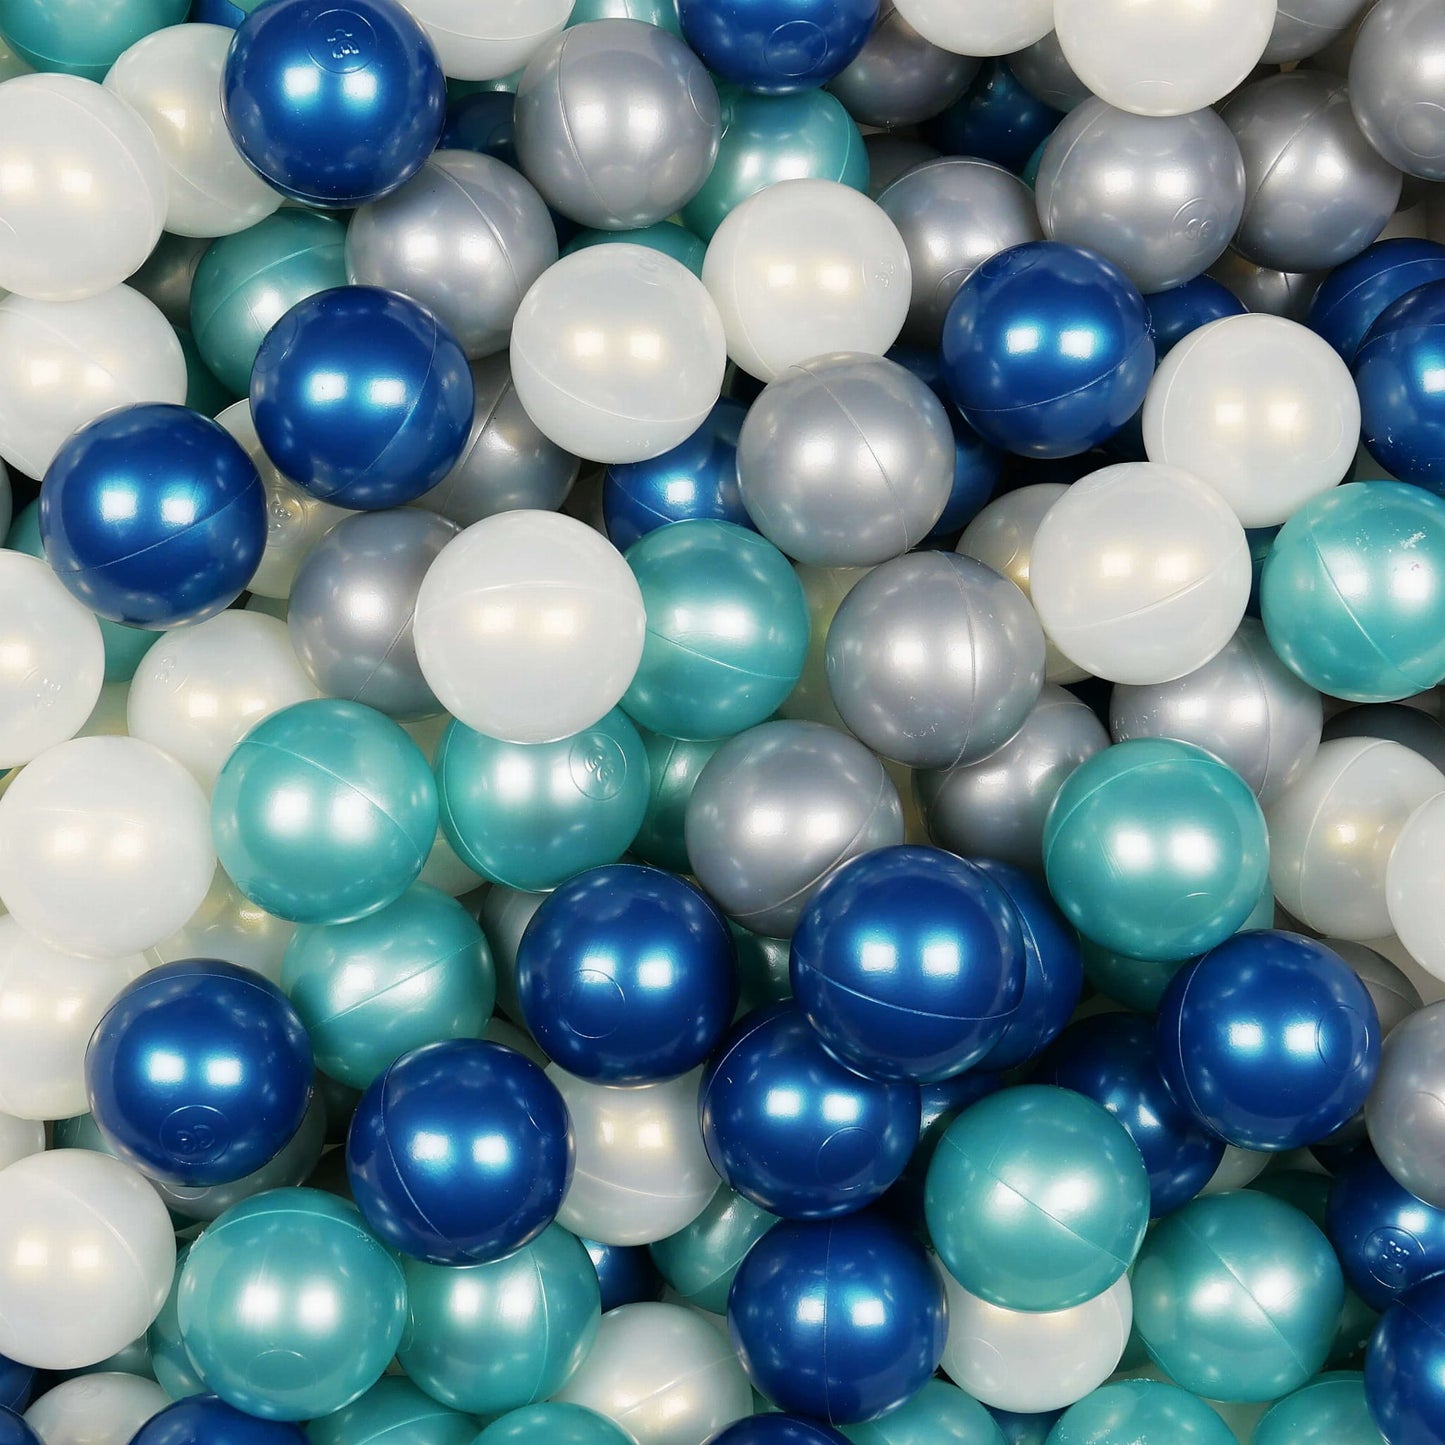 Balles de jeu ø7cm 400 pièces métalliques turquoise, bleu métallique, iridescent, argenté